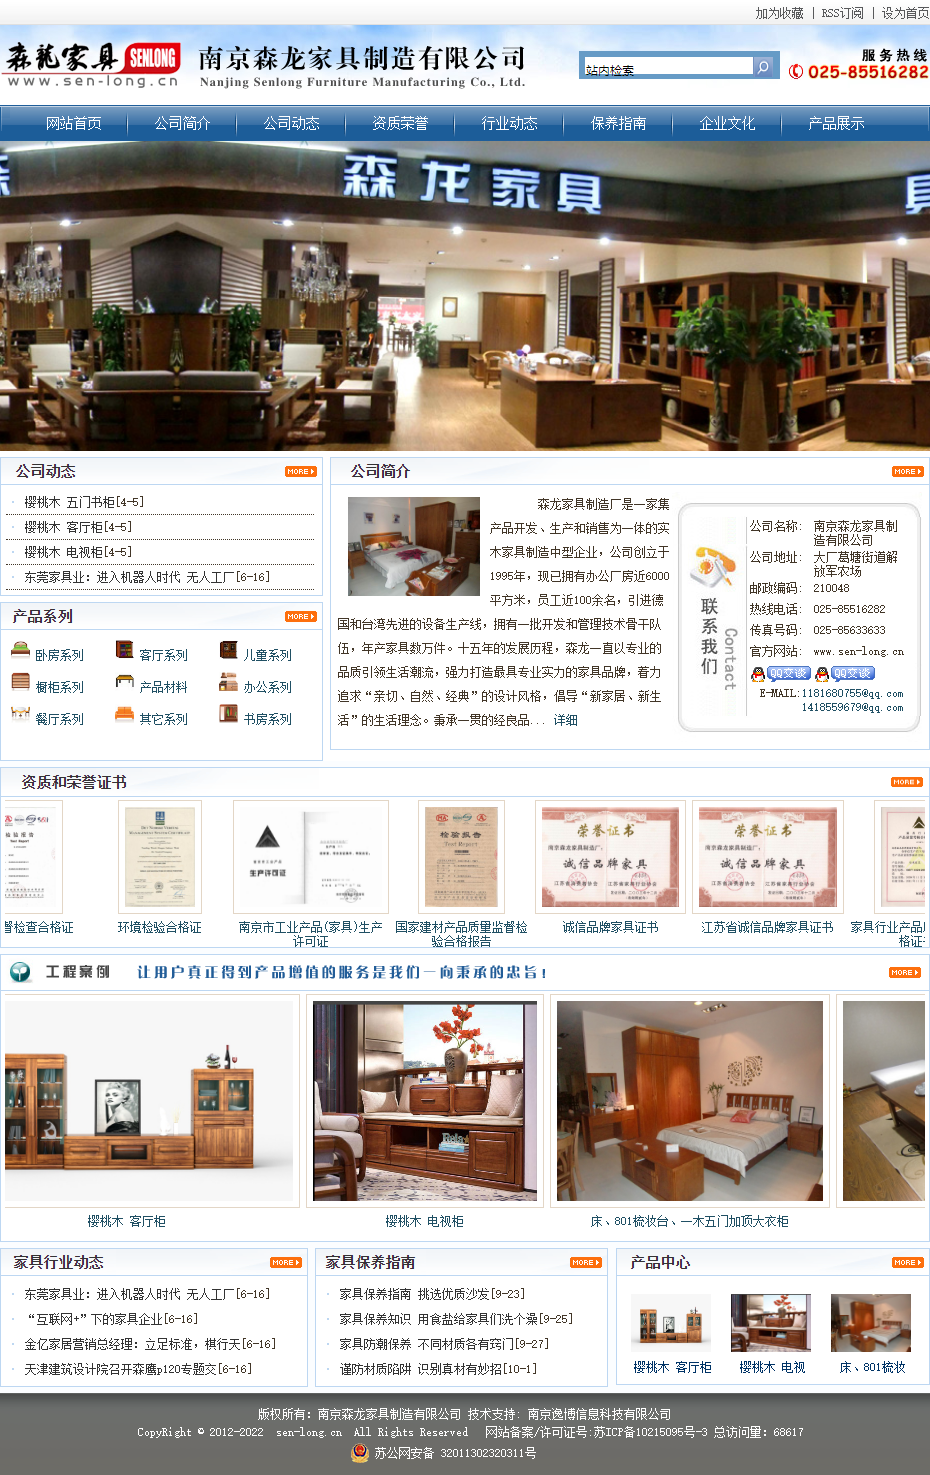 南京森龙家具制造有限公司网站案例